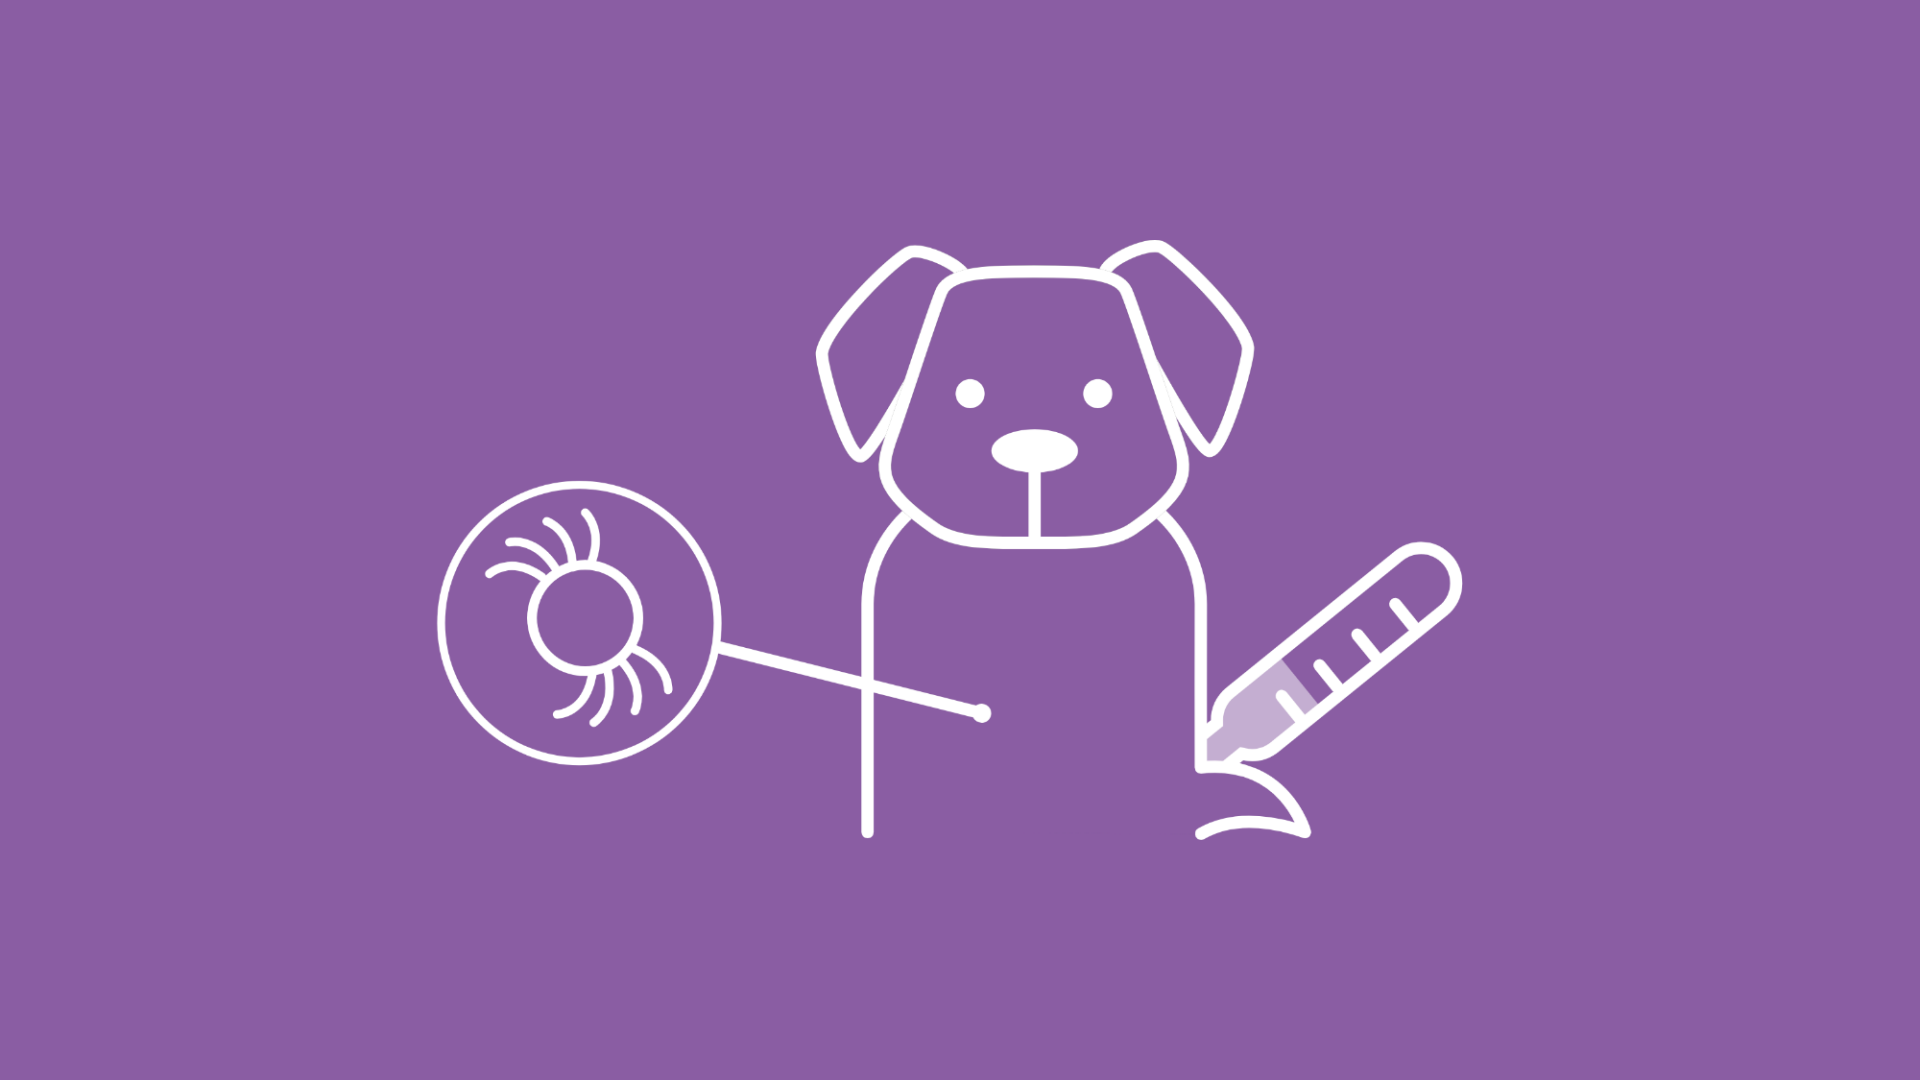 Die Grafik symbolisiert, dass ein Zeckenbiss bei Hunden Fieber auslösen kann.